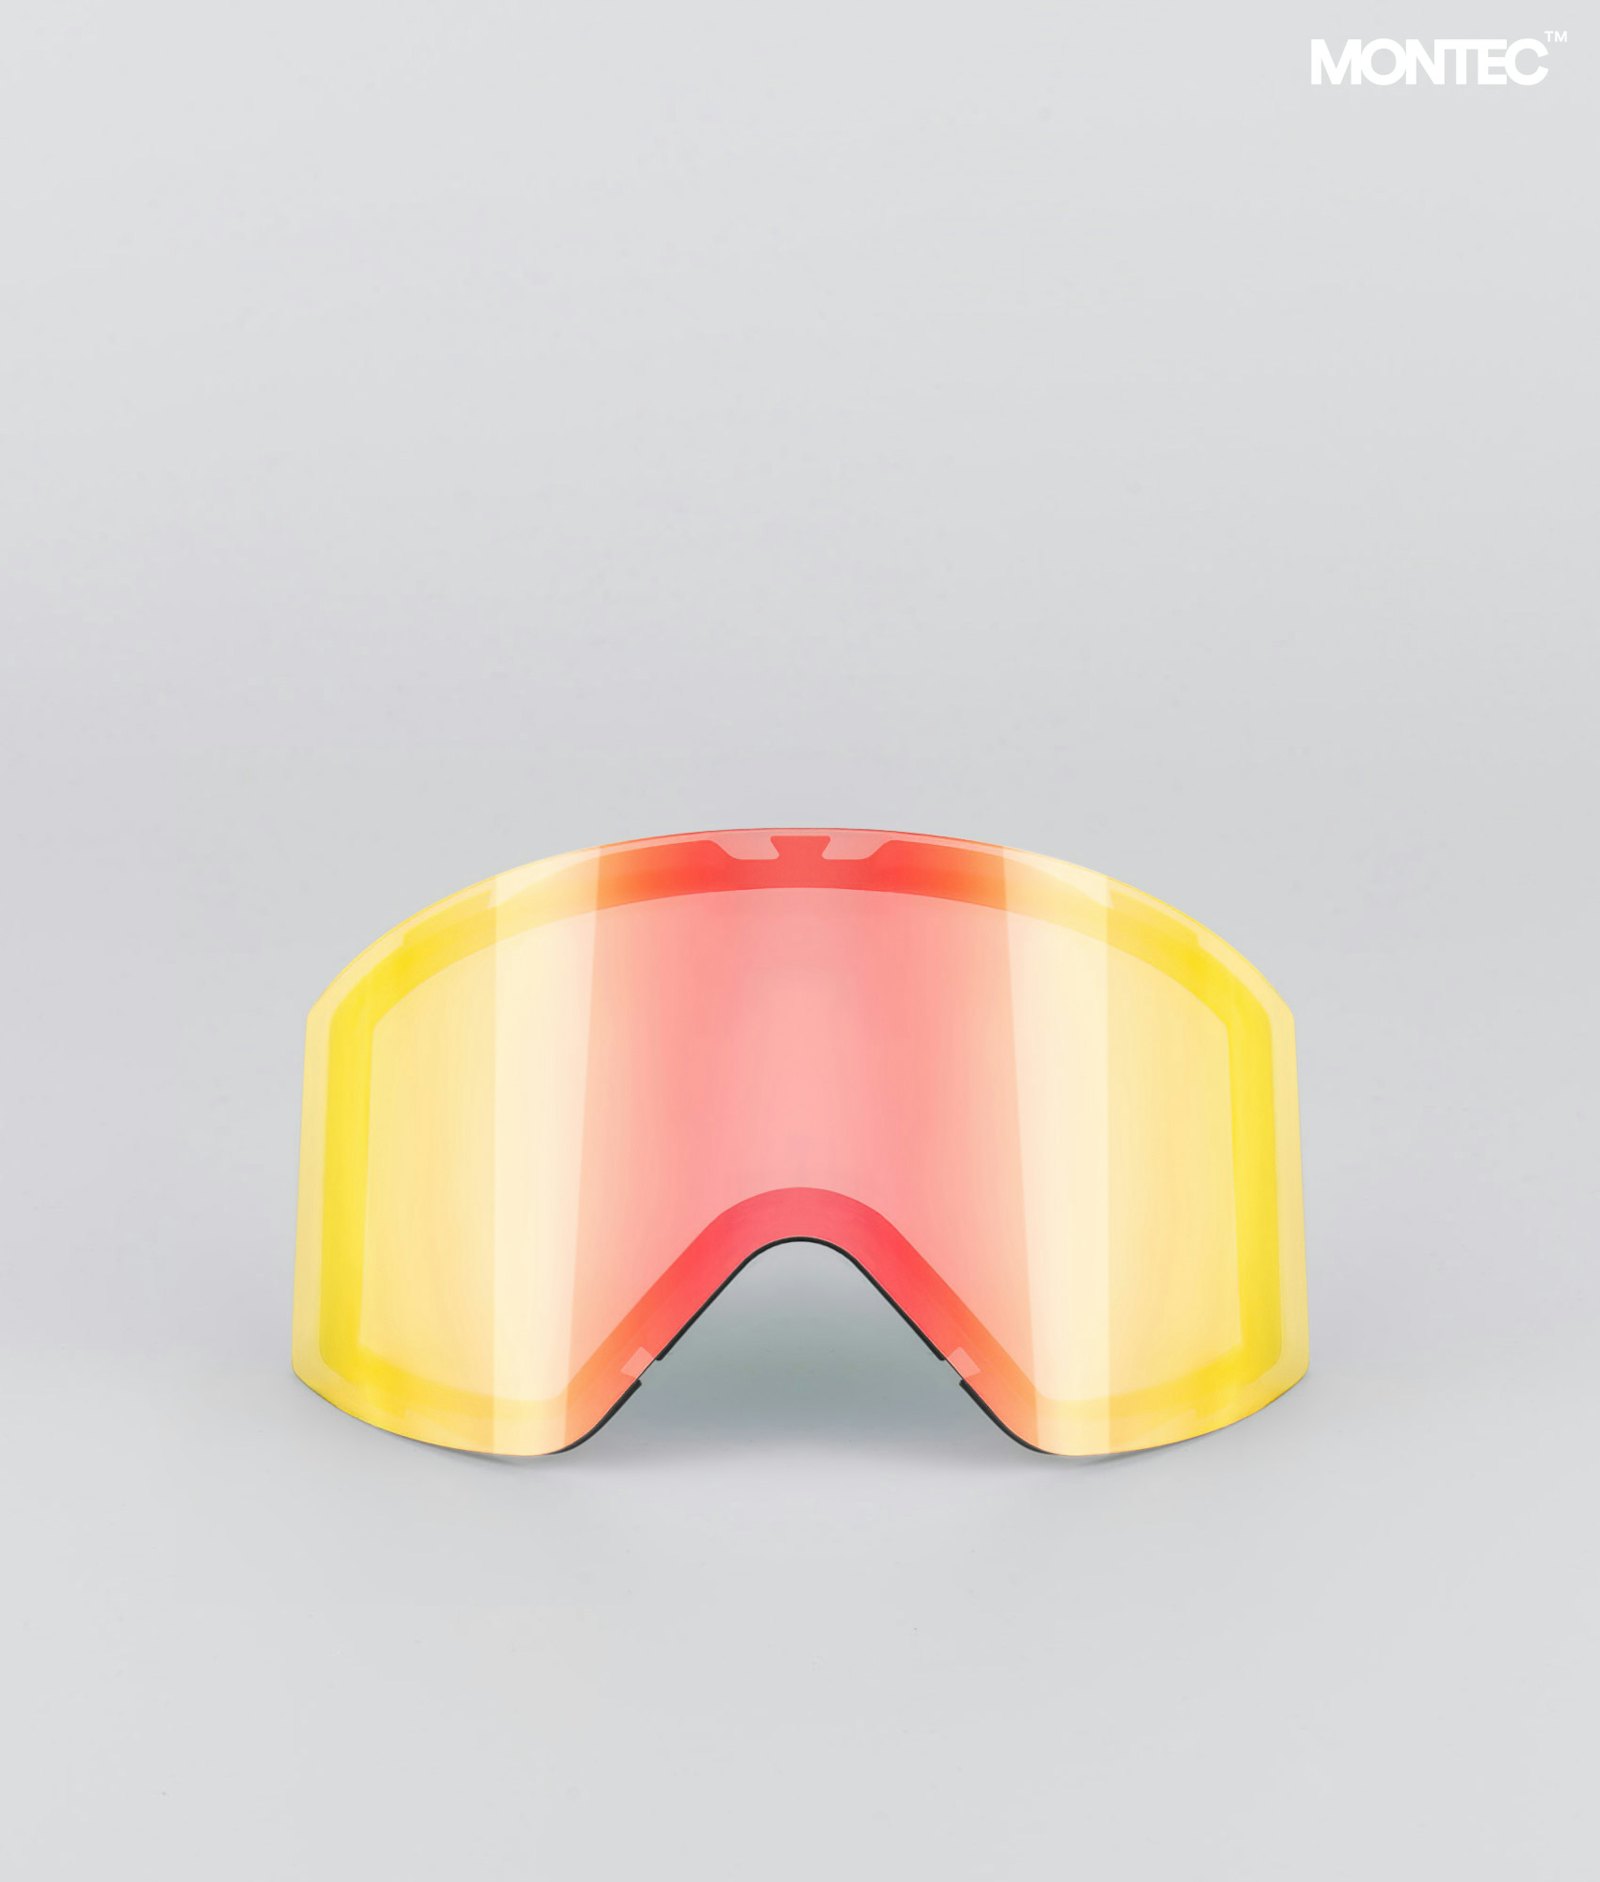 Montec Scope 2020 Goggle Lens Large Ecran de remplacement pour masque de ski Ruby Red